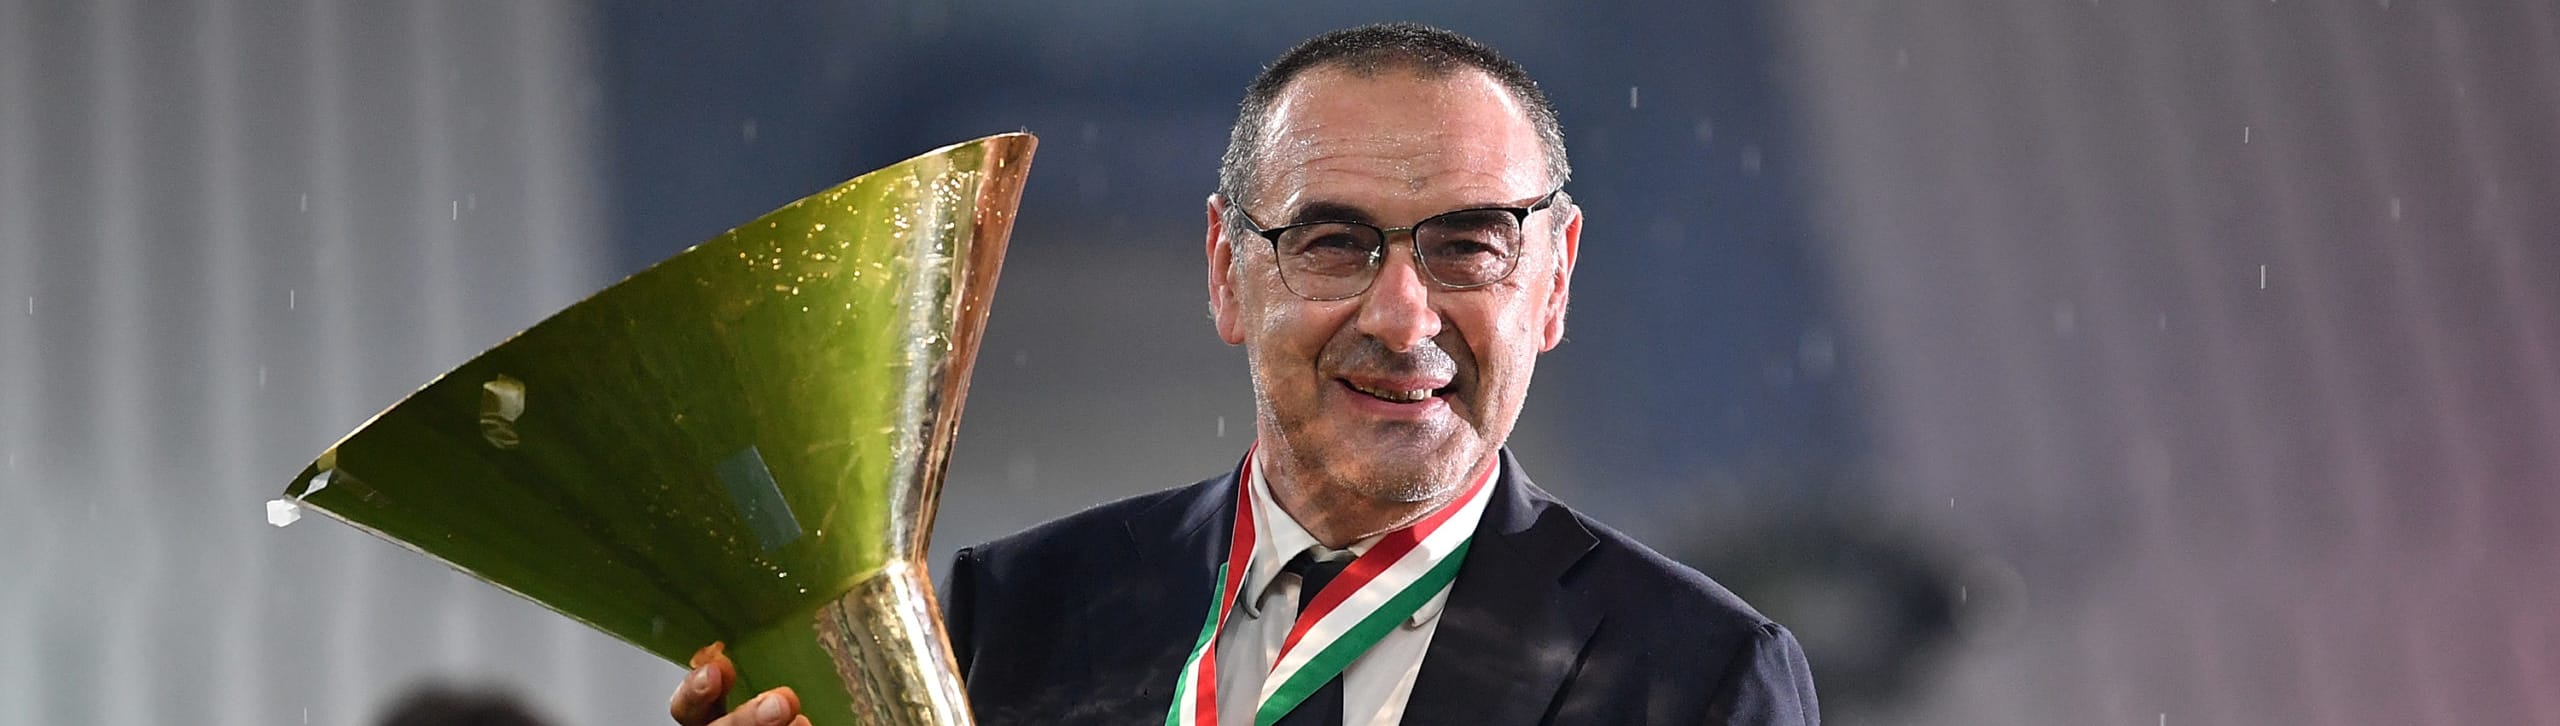 Juventus, campione d'Italia e di critiche: perché può continuare a vincere anche con Sarri